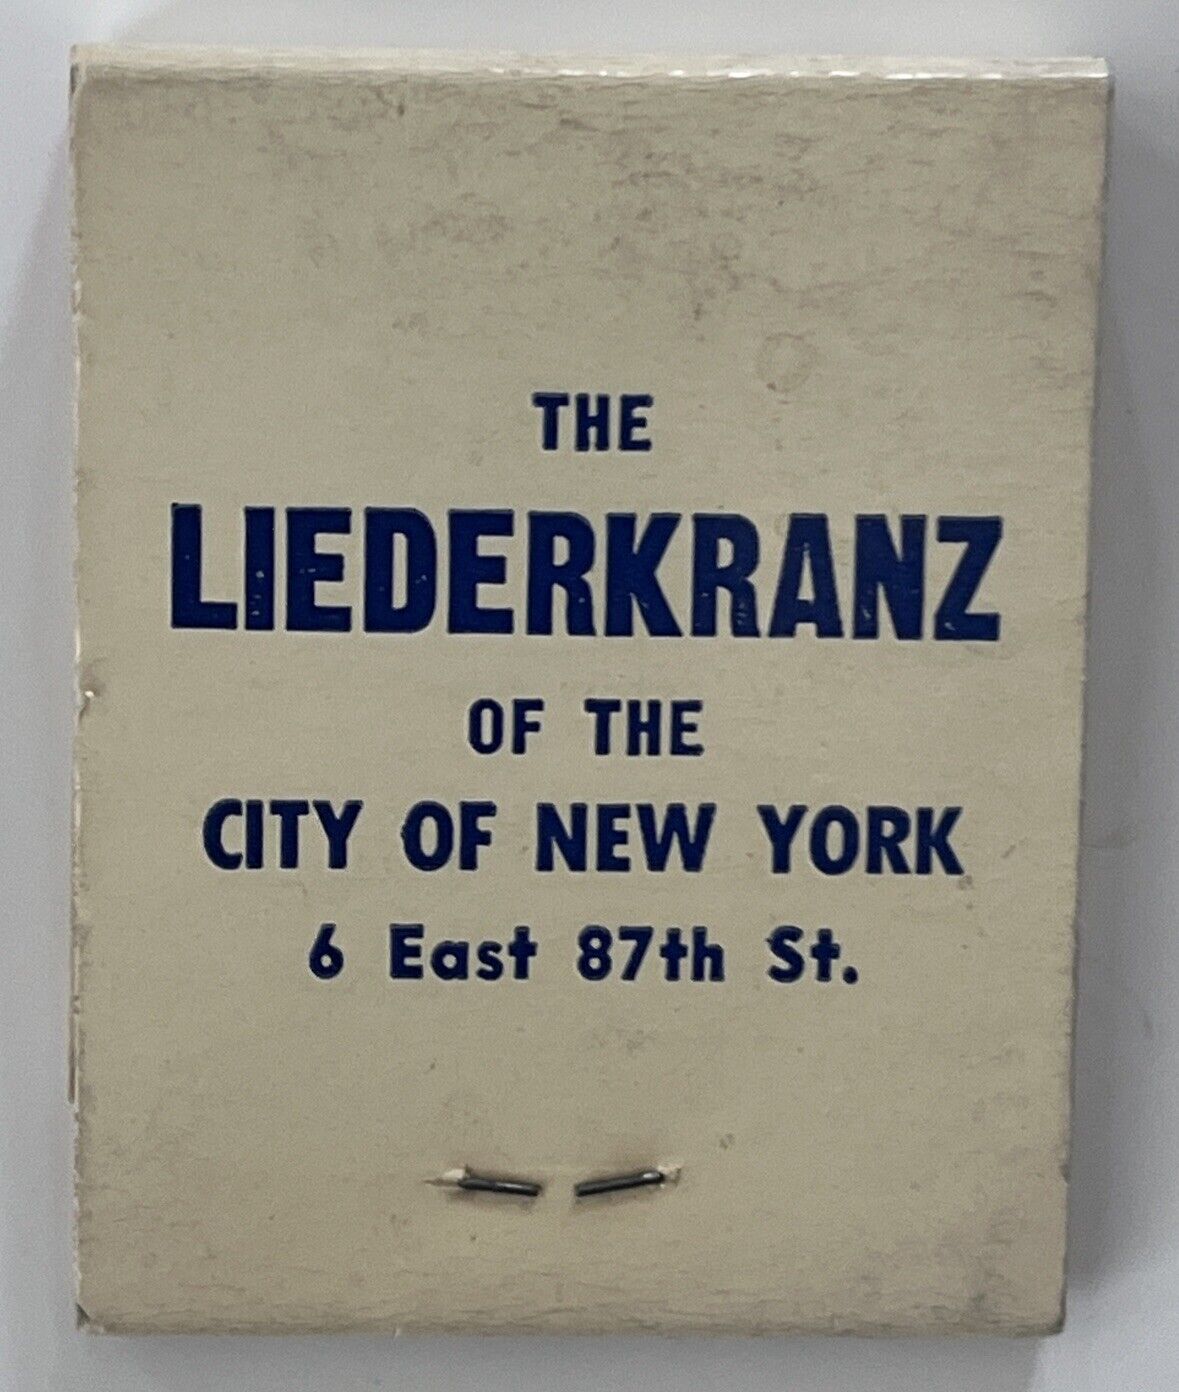 Vintage Matchbook - The Liederkranz of the City of New York - Liederkranz Club